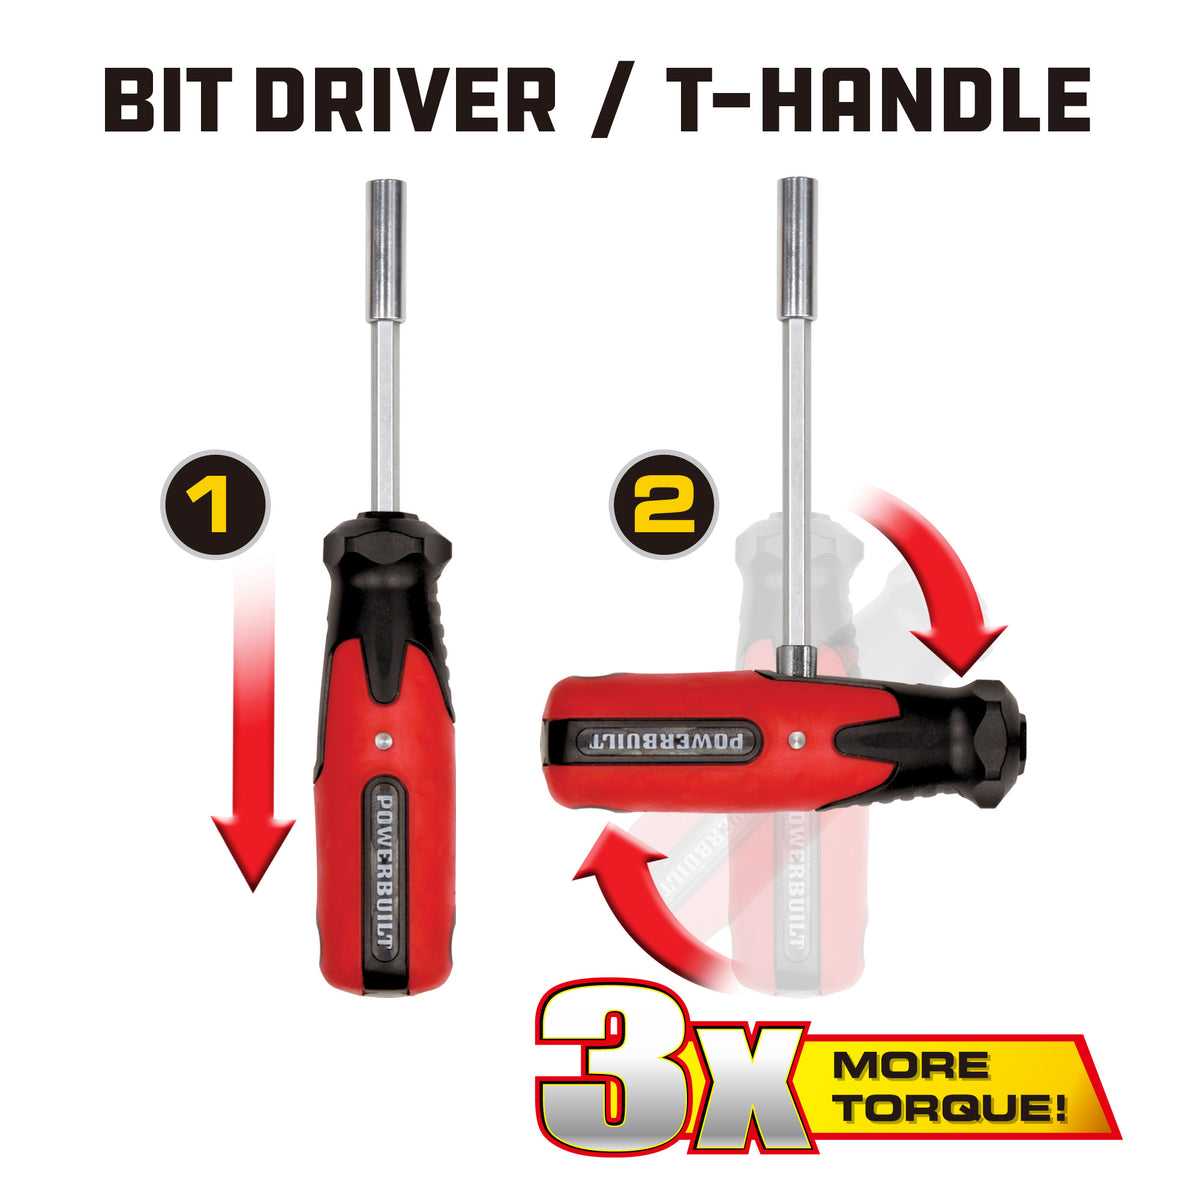 21 Piece T-Handle Bit Driver Set